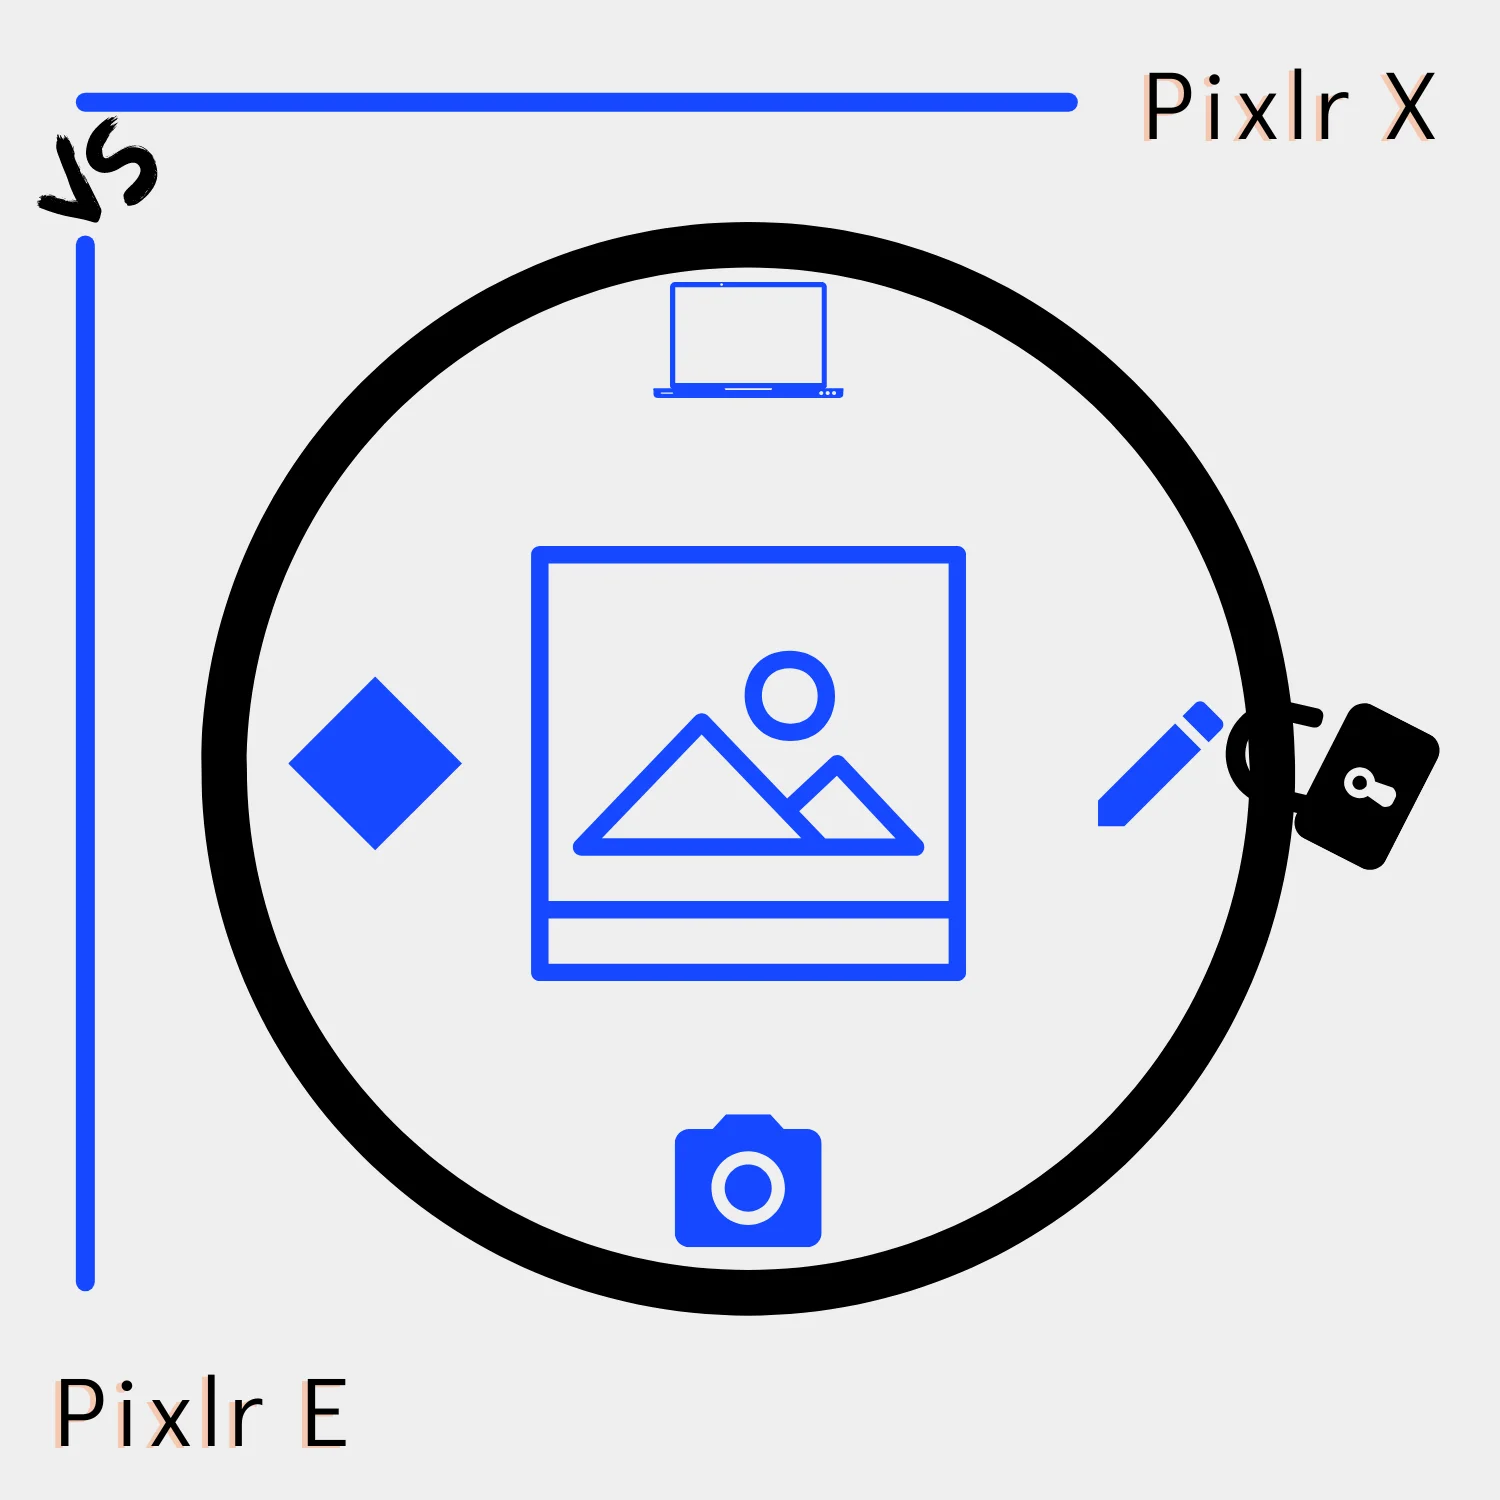 Pixlr X vs. Pixlr E